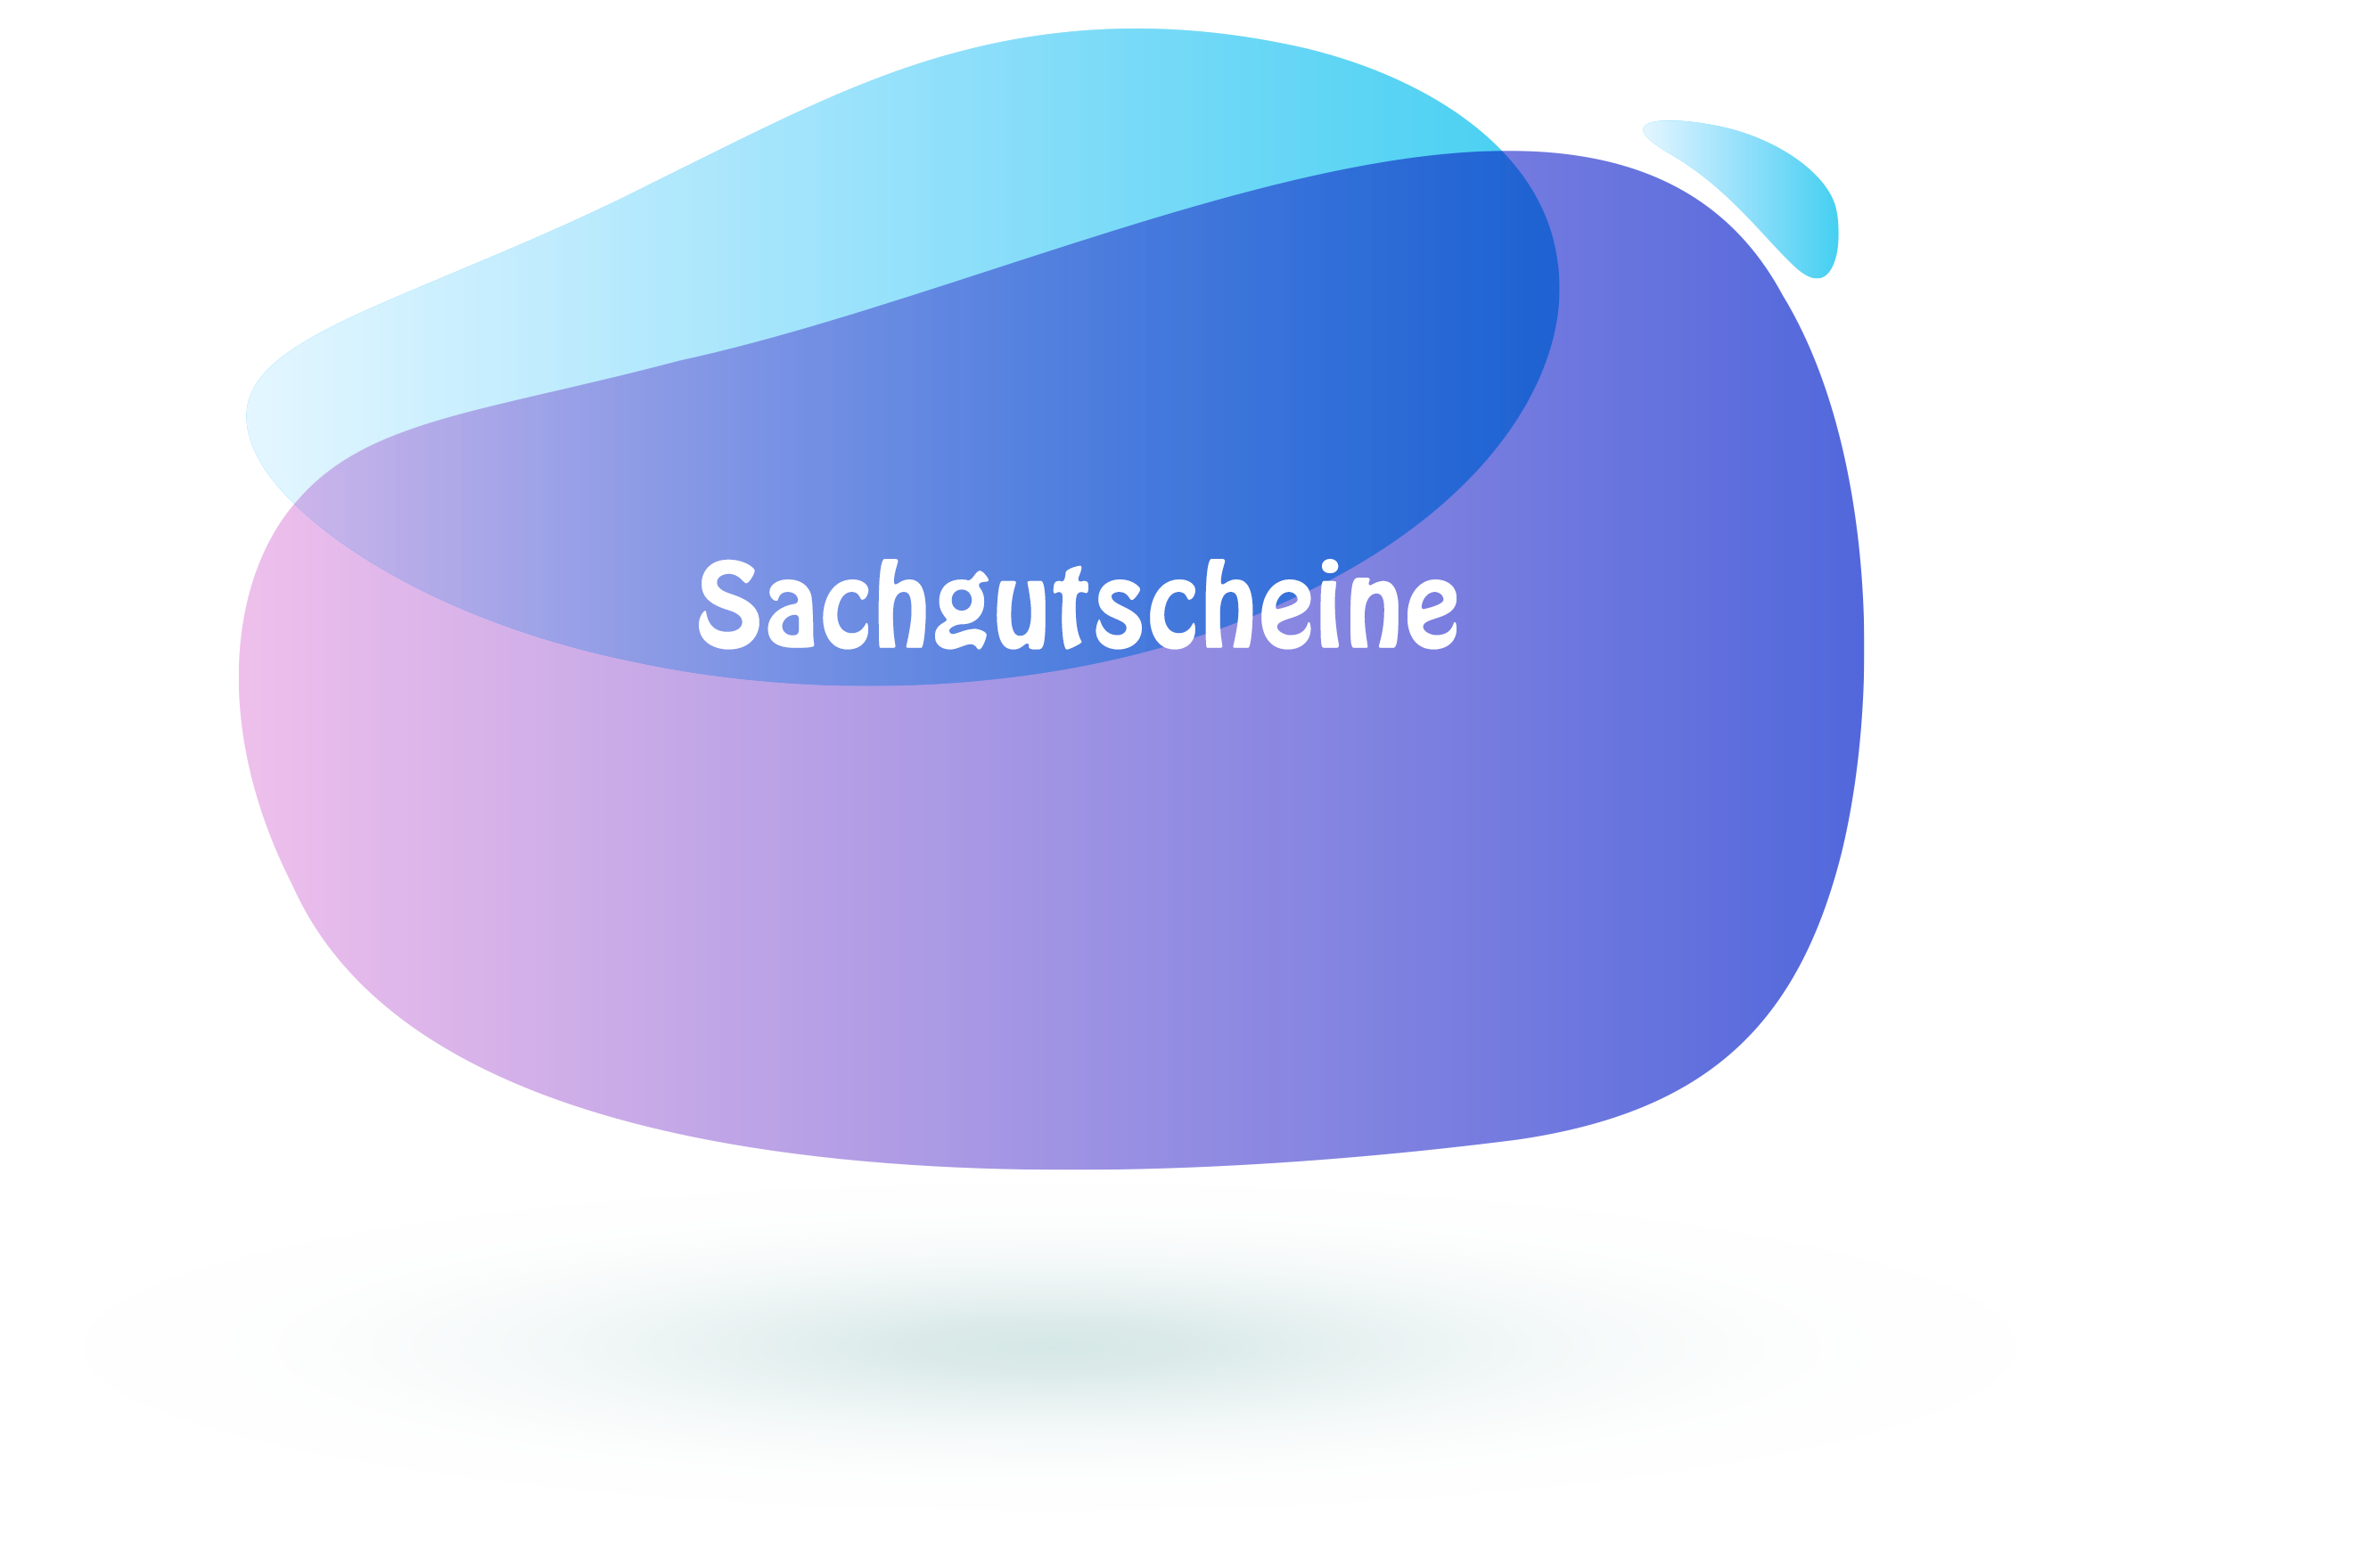 Employee benefit -Sachgutscheine